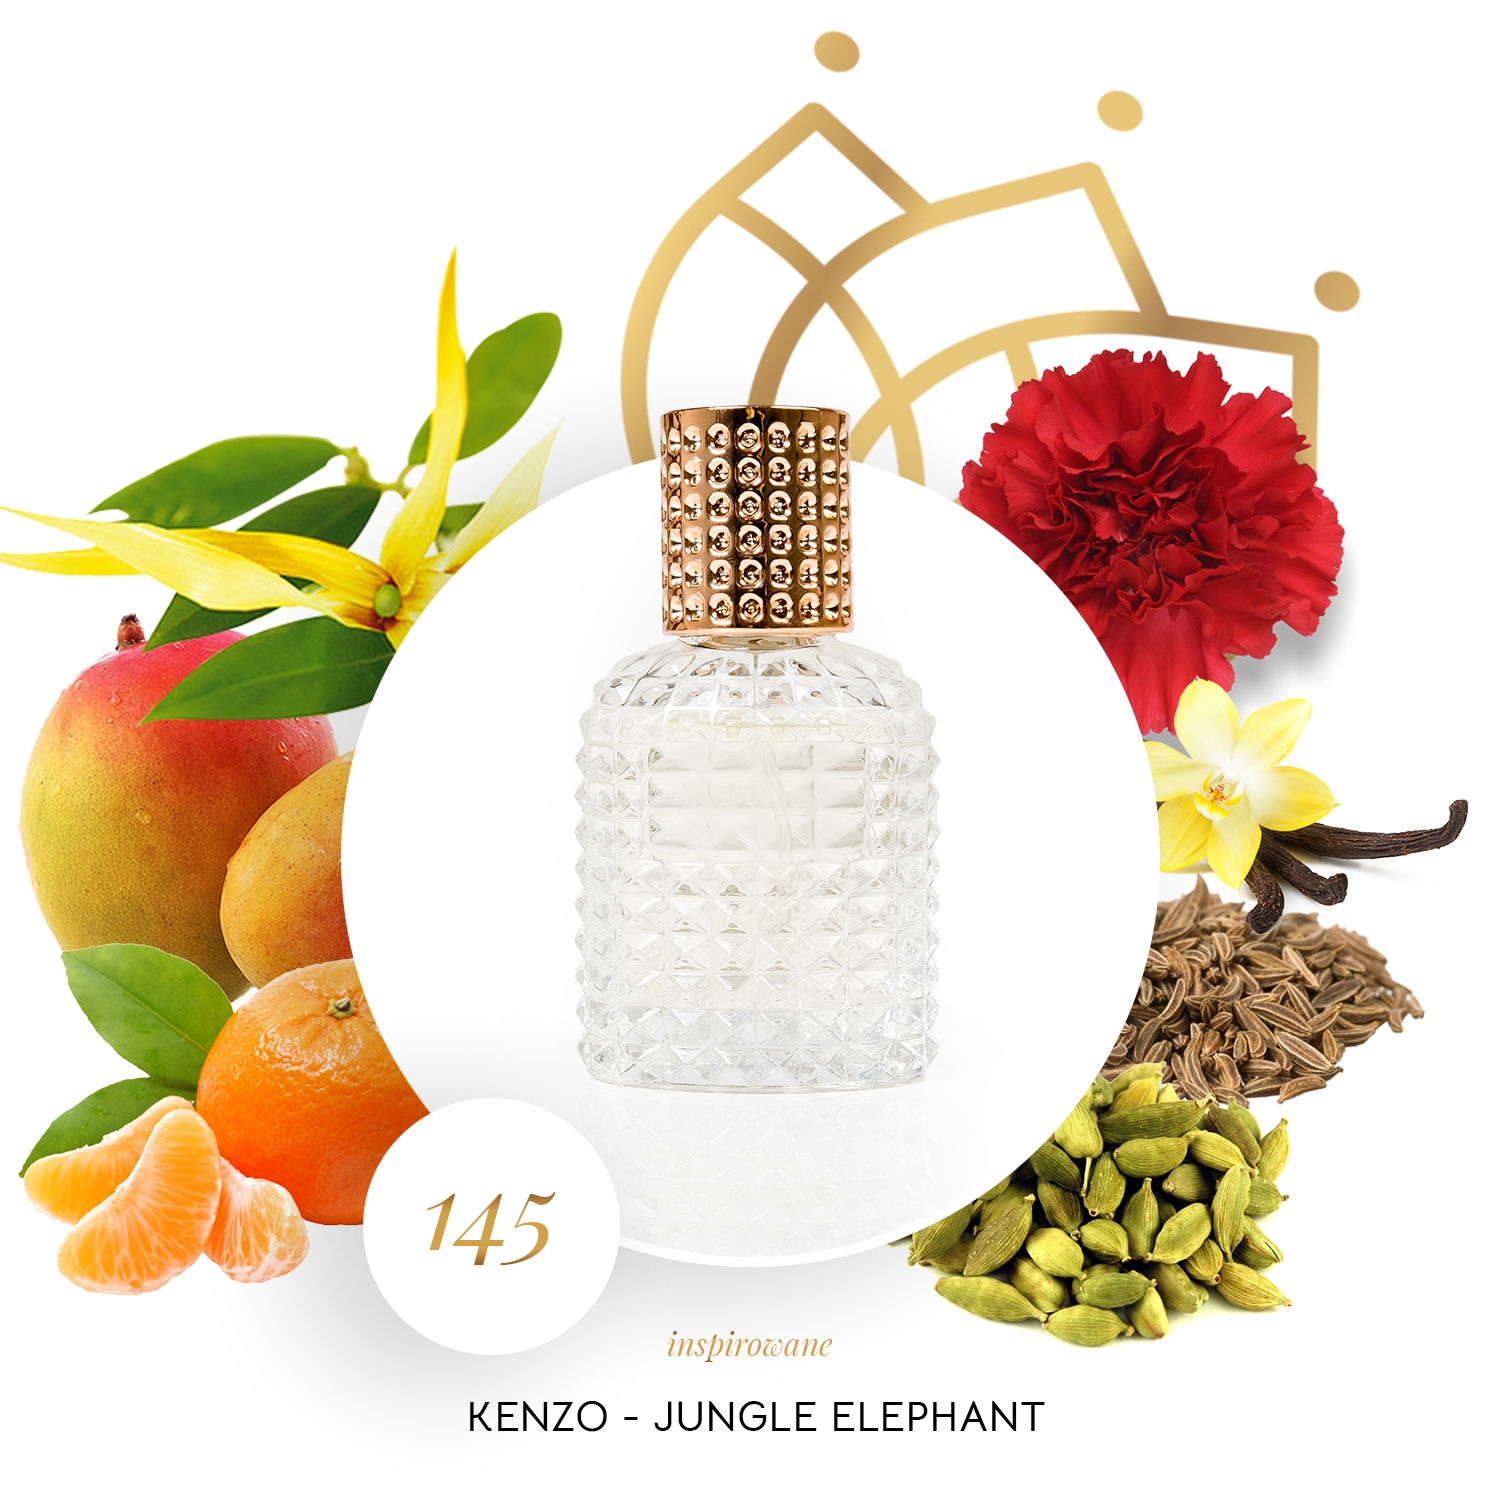 Grafika ze składnikami perfum inspirowanych Elephant Jungle Kenzo